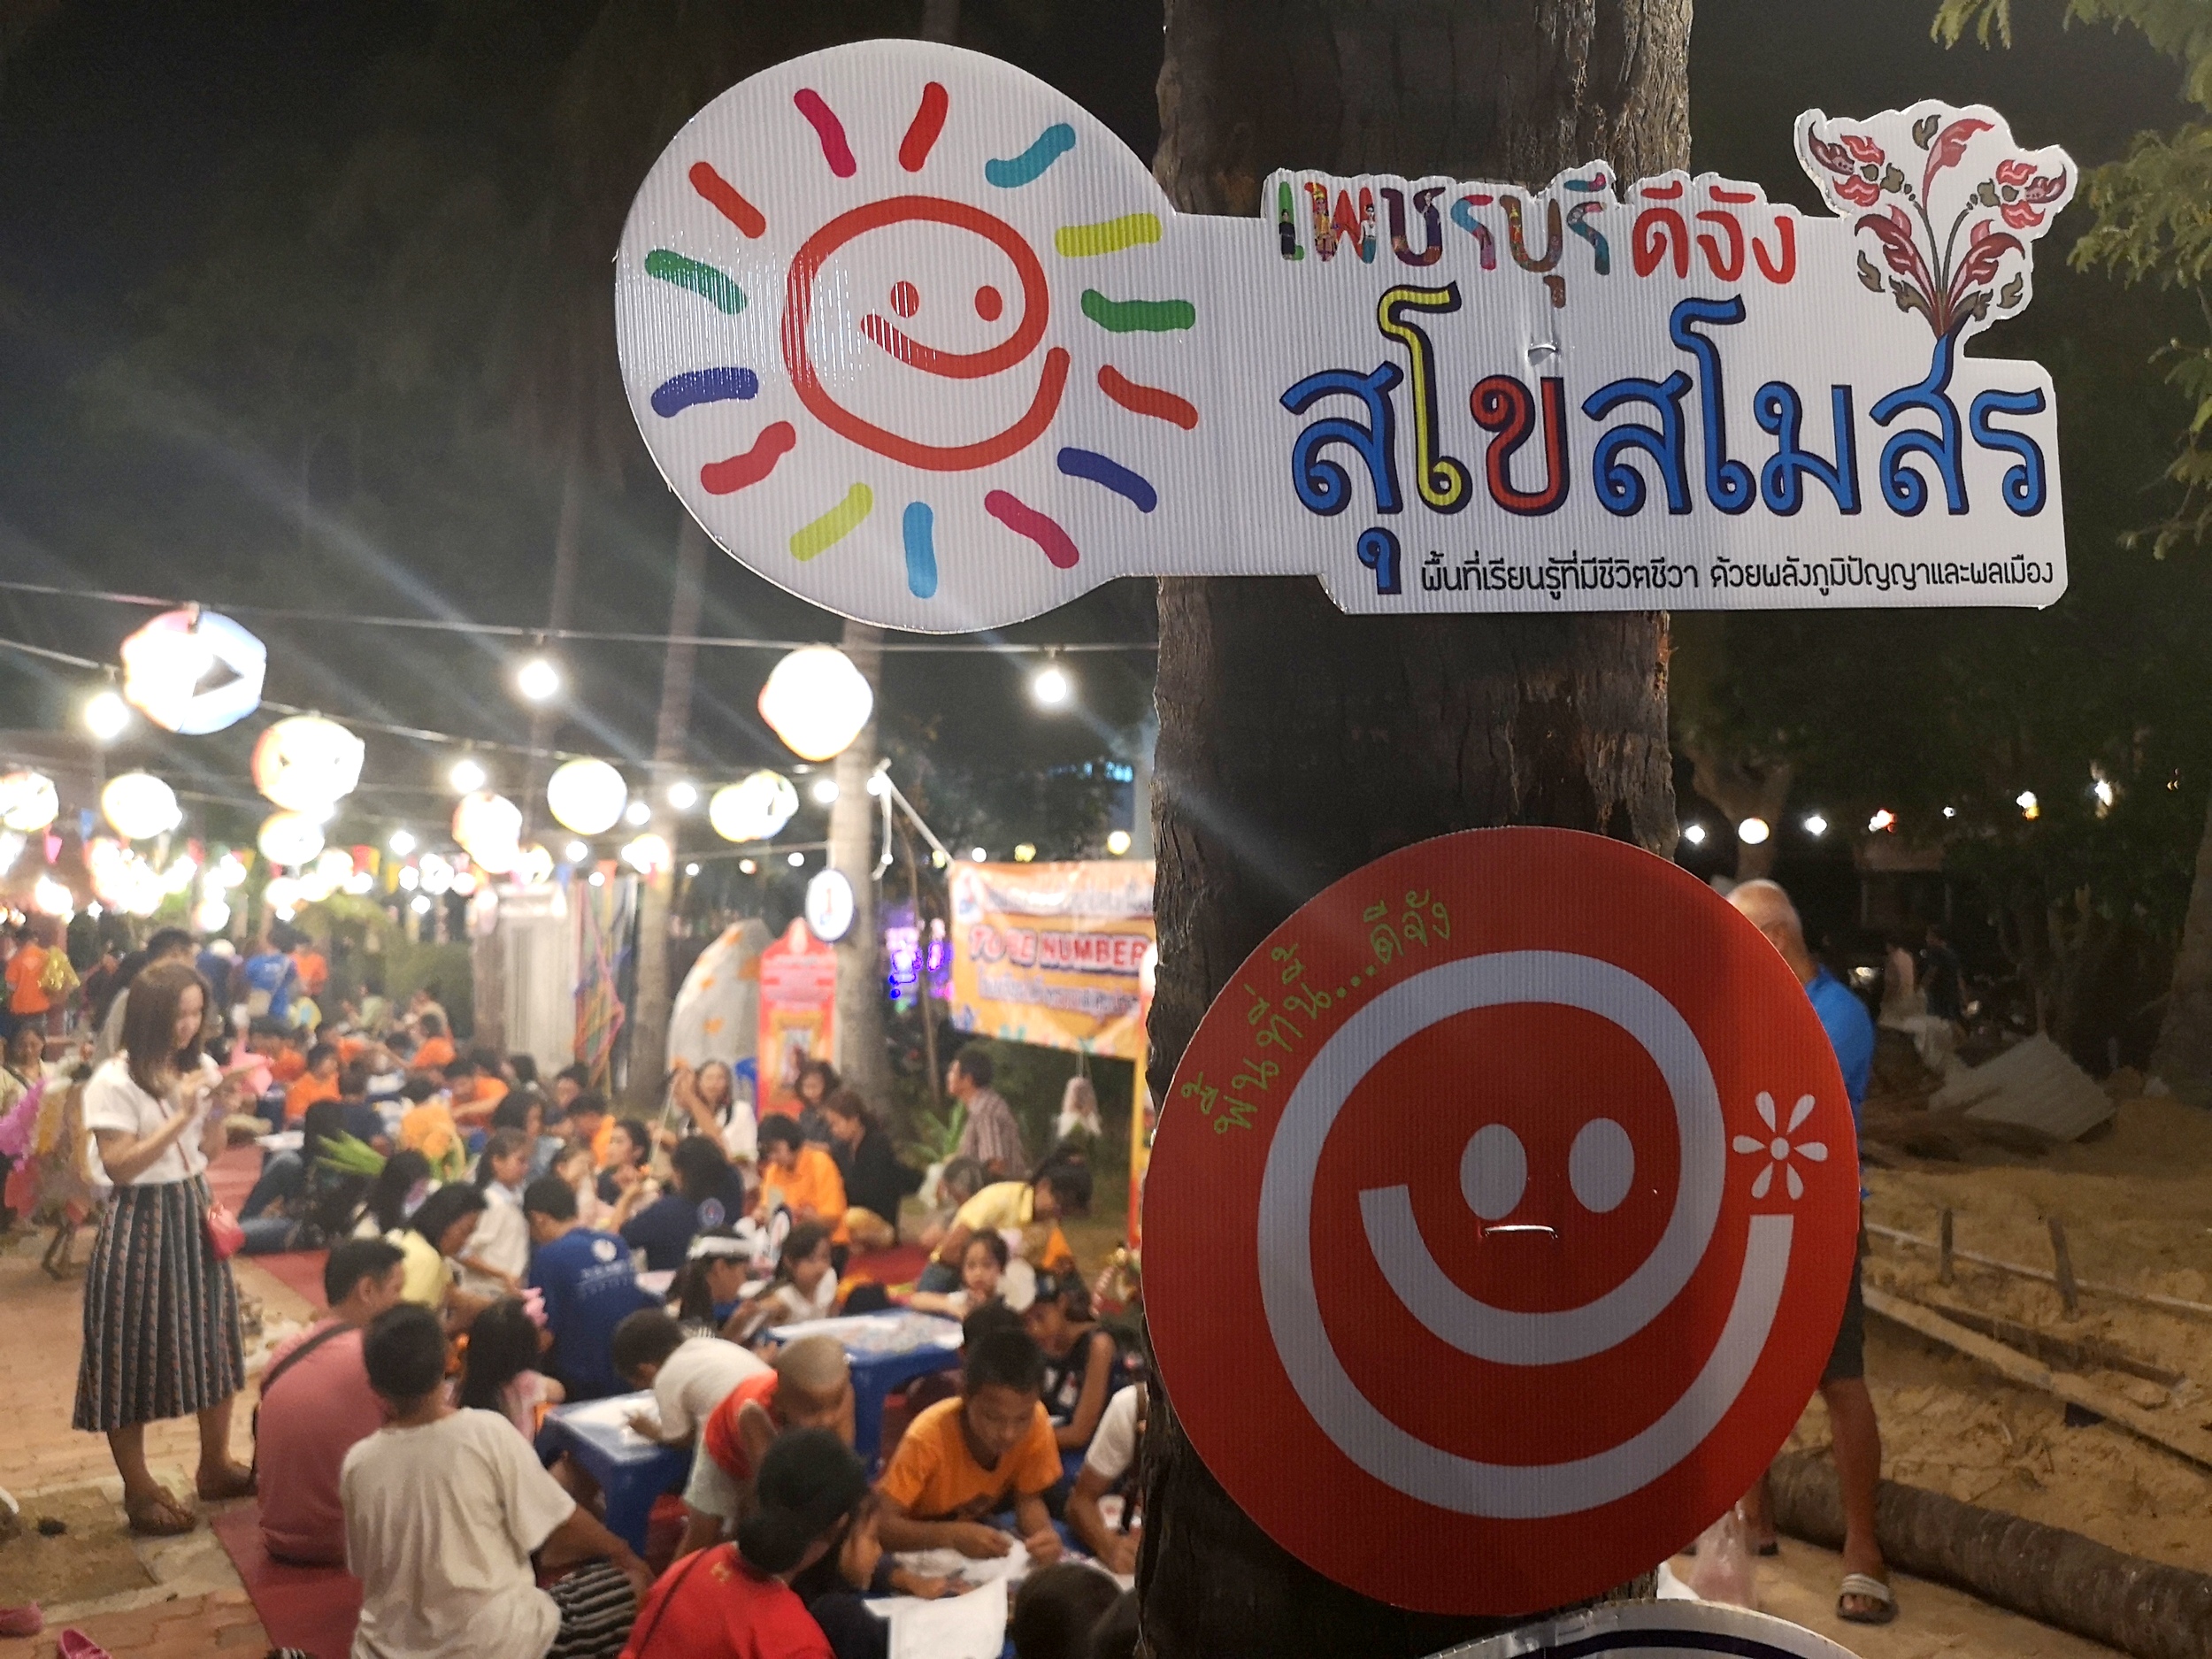 'เพชรบุรี ดีจัง' อัศจรรย์ปิดเทอมเติมโลกเรียนรู้วัฒนธรรม thaihealth